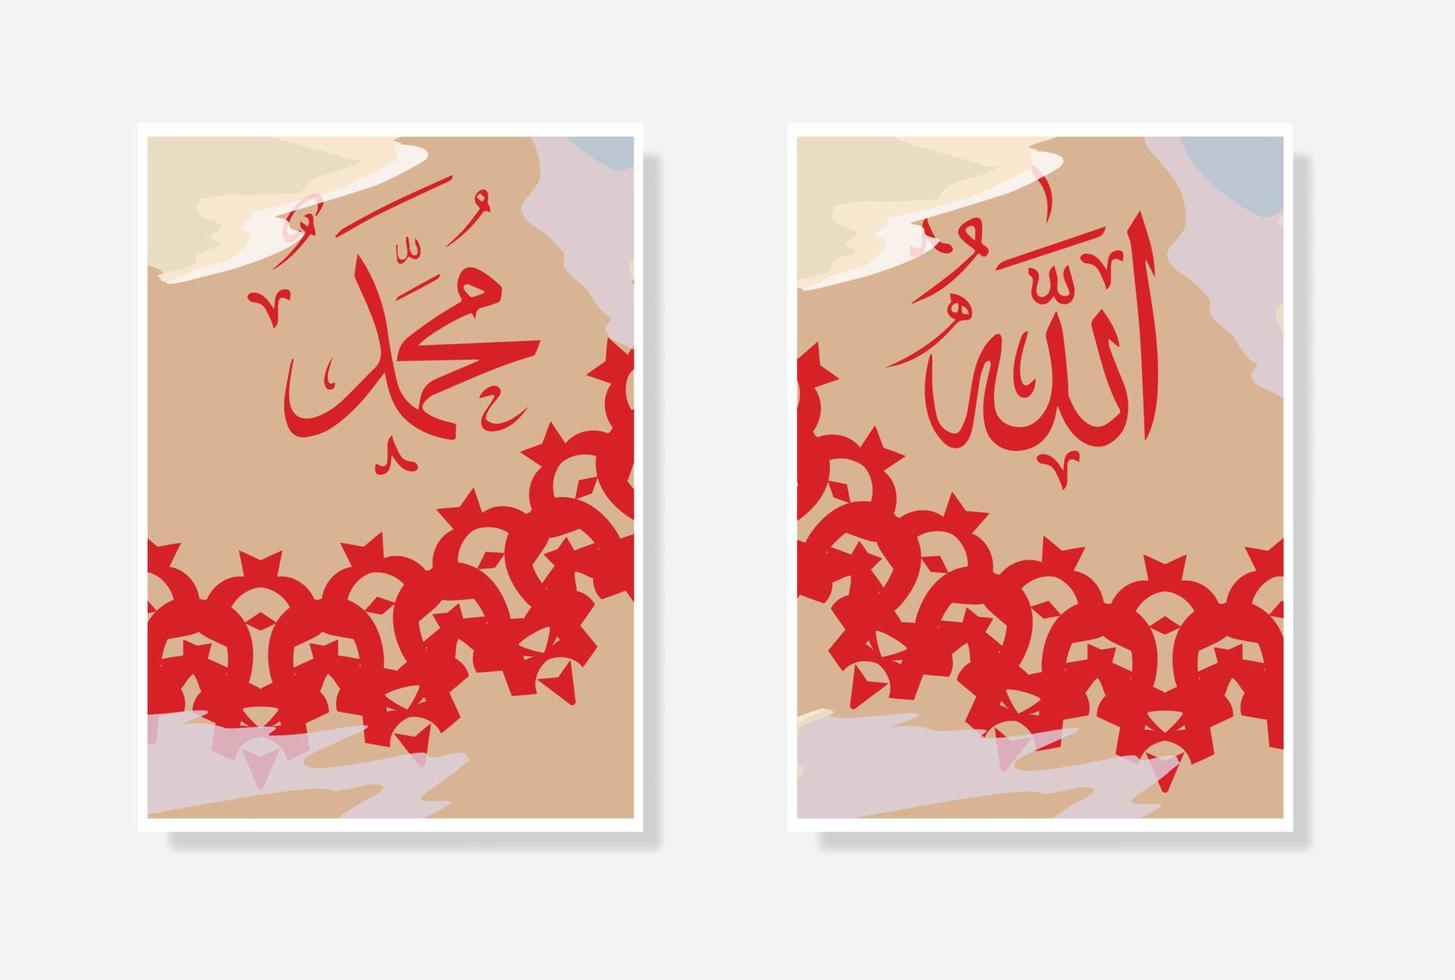 allah muhammad kalligrafi affisch med vattenfärg och cirkel ram prydnad vektor